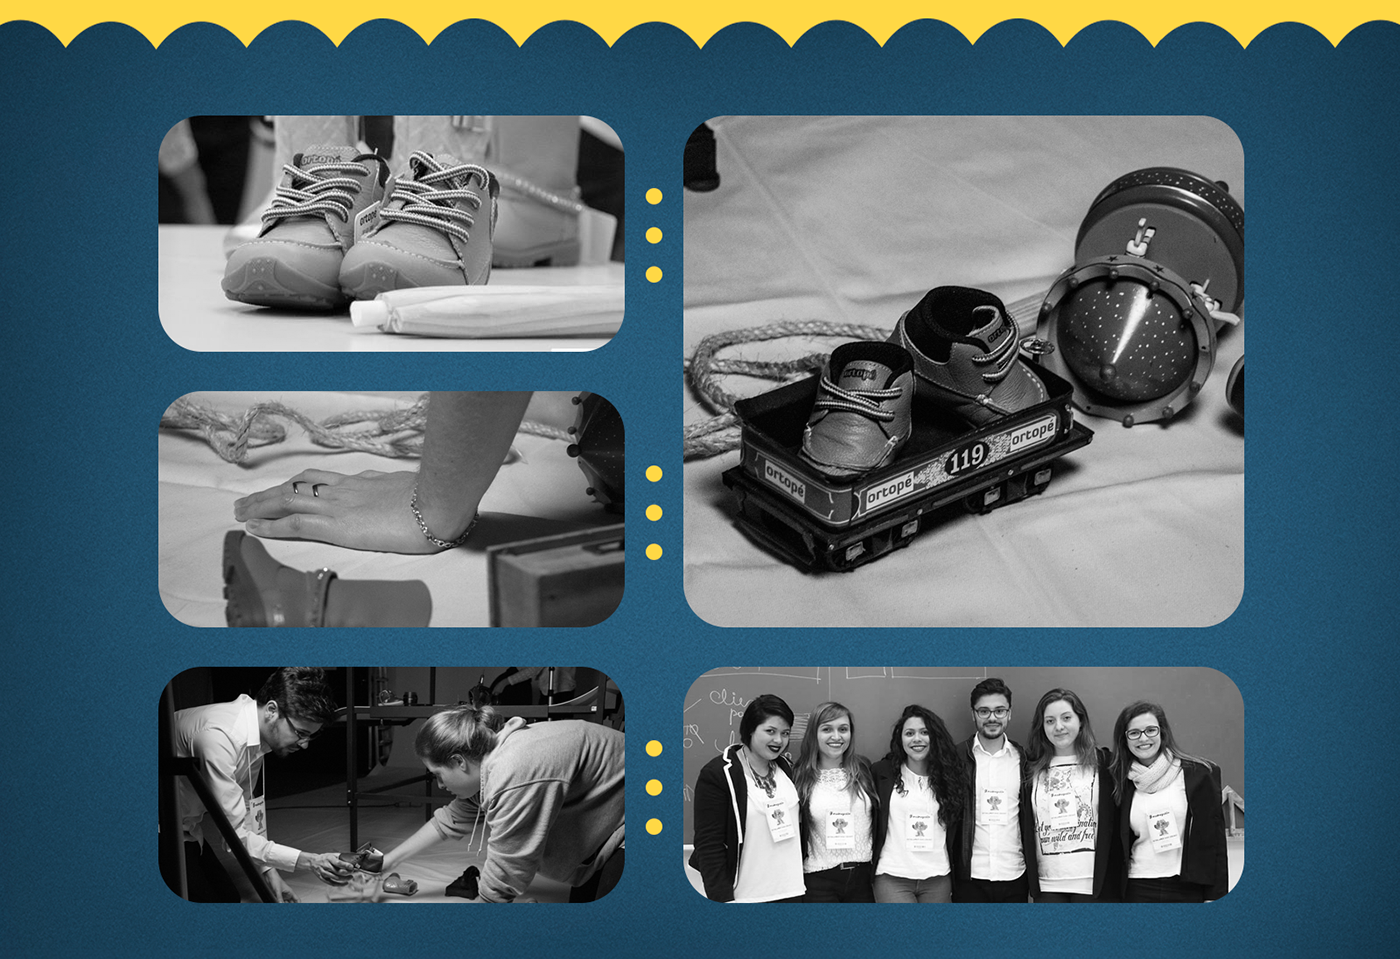 Universidade Feevale madrugadão feevale catalogo catálogo de produtos fotografia de produto Ortopé calçados infantil ortopé 50 anos